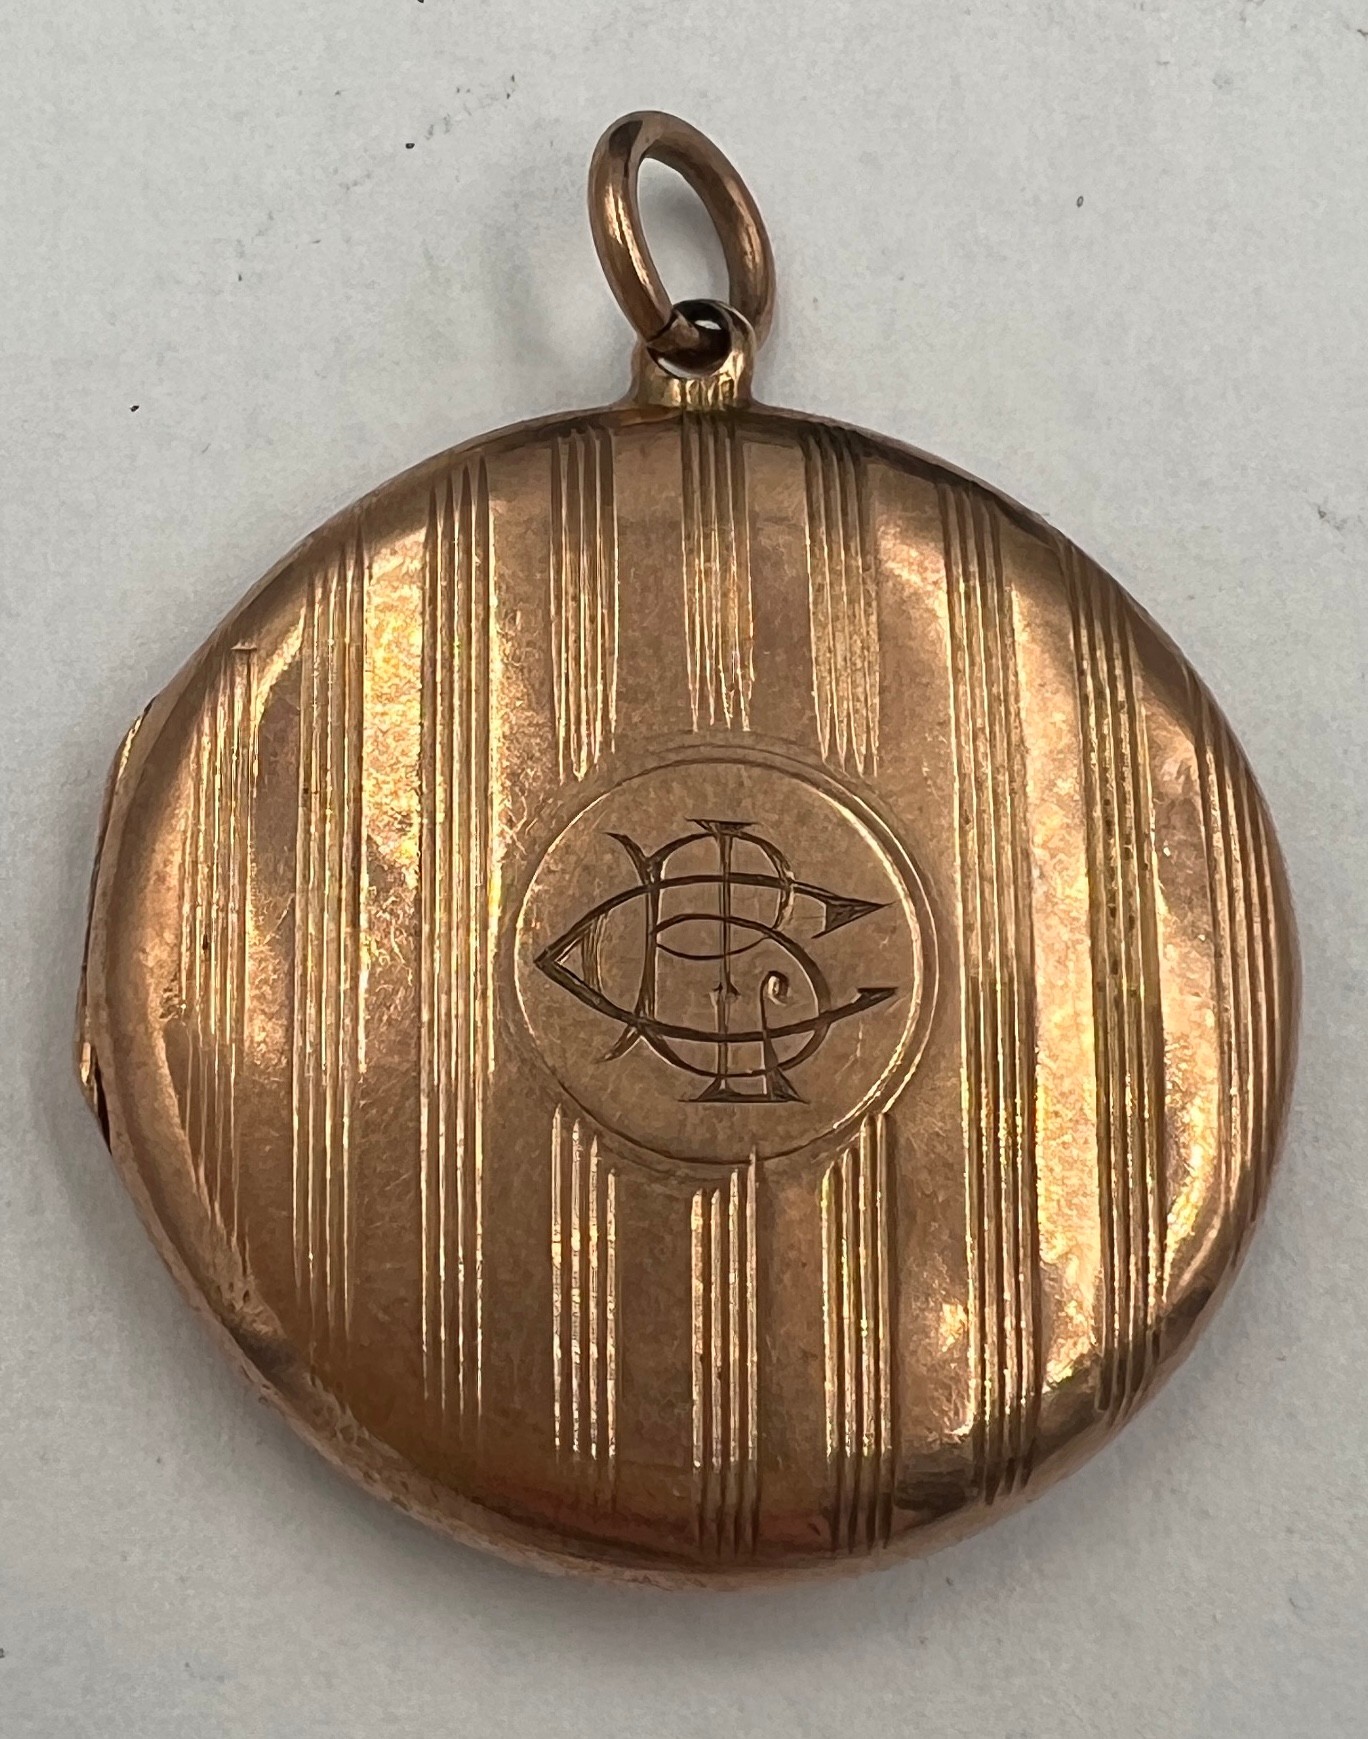 A 9 carat gold circular locket. 2.5cm d. Weight 5.3gm.